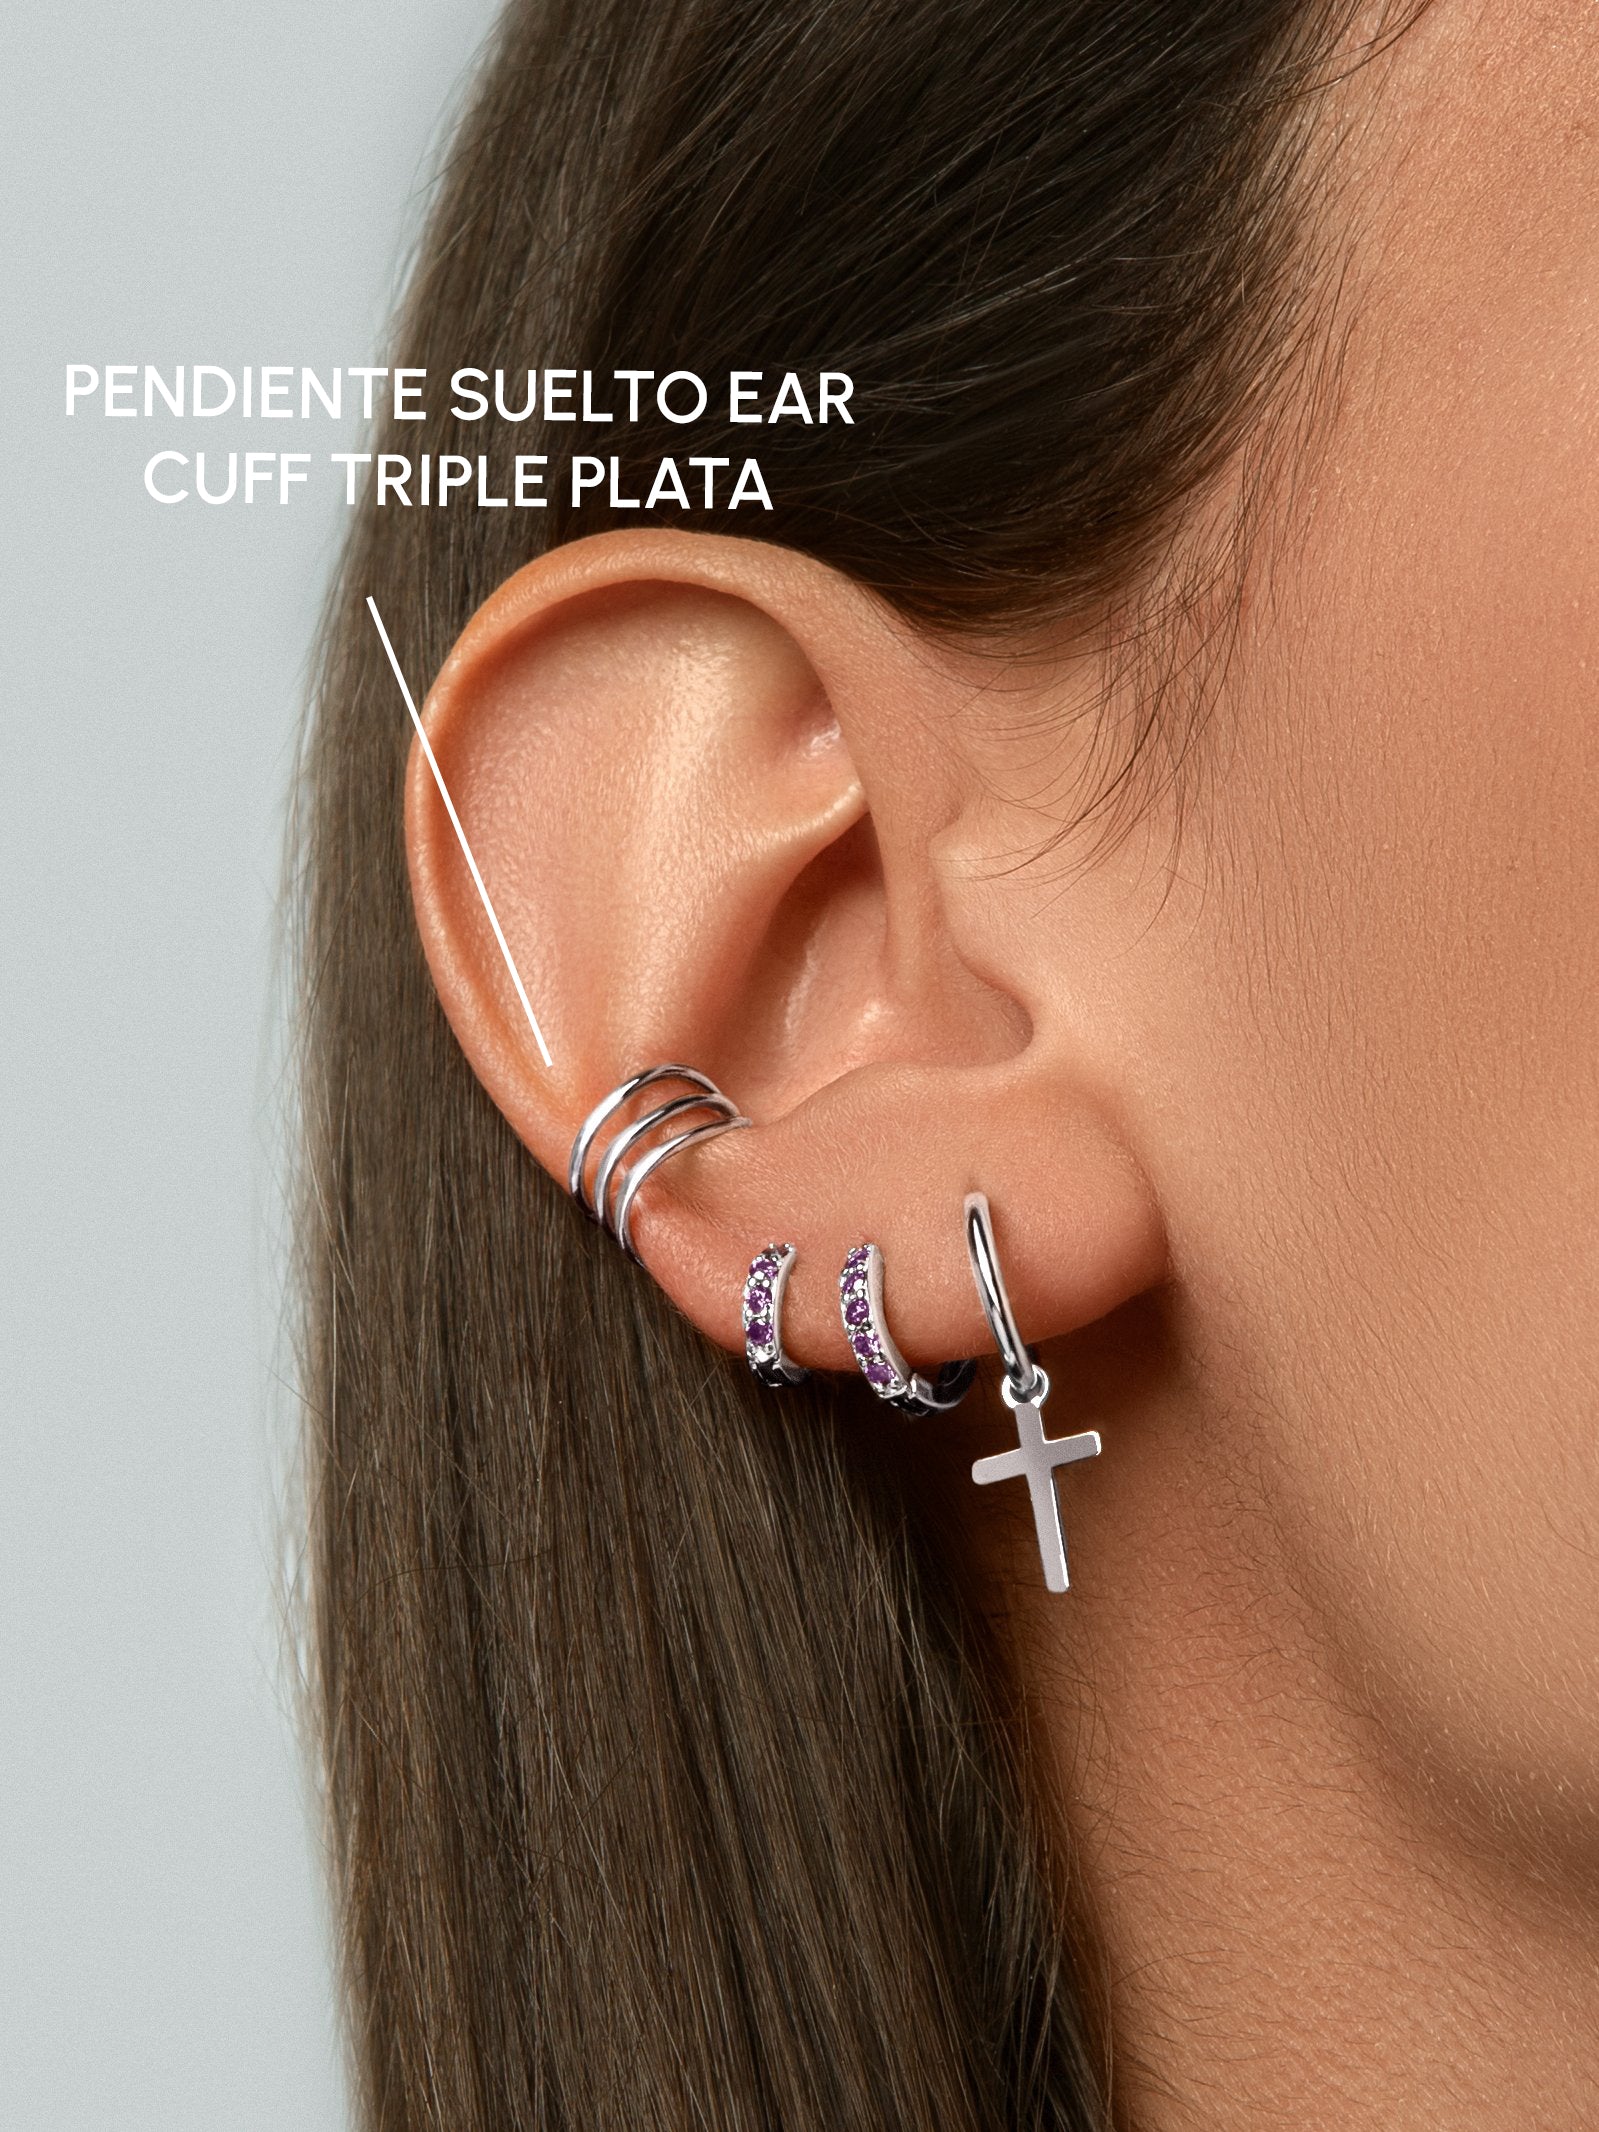 Pendiente Suelto Ear Cuff Triple Plata